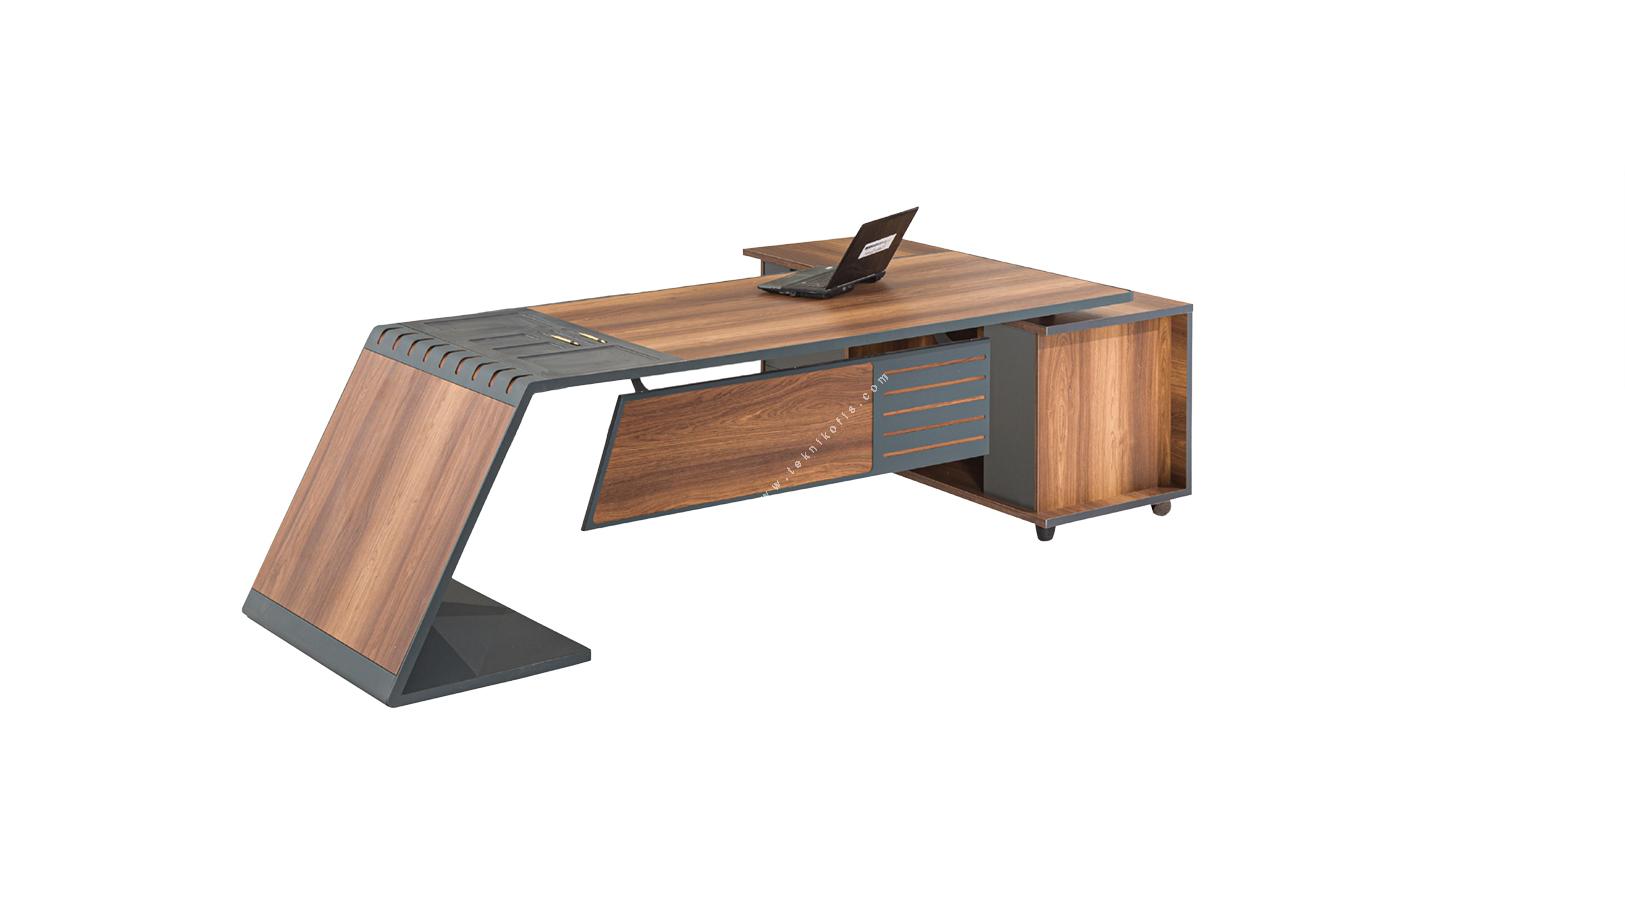 minato ahşap tasarım etajerli makam masası